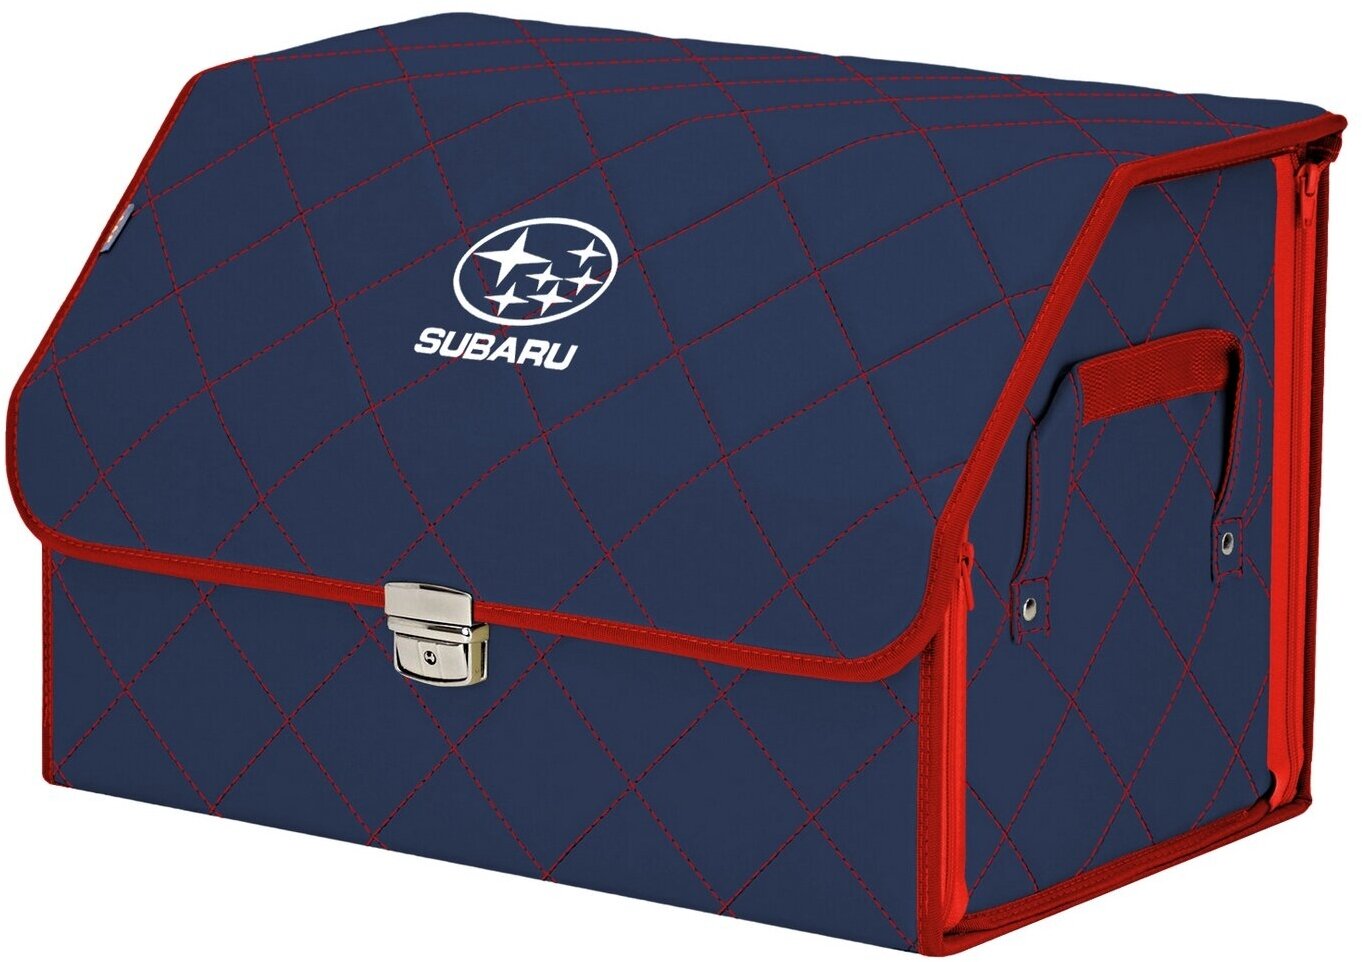 Органайзер-саквояж в багажник "Союз Премиум" (размер L). Цвет: синий с красной прострочкой Ромб и вышивкой Subaru (Субару).